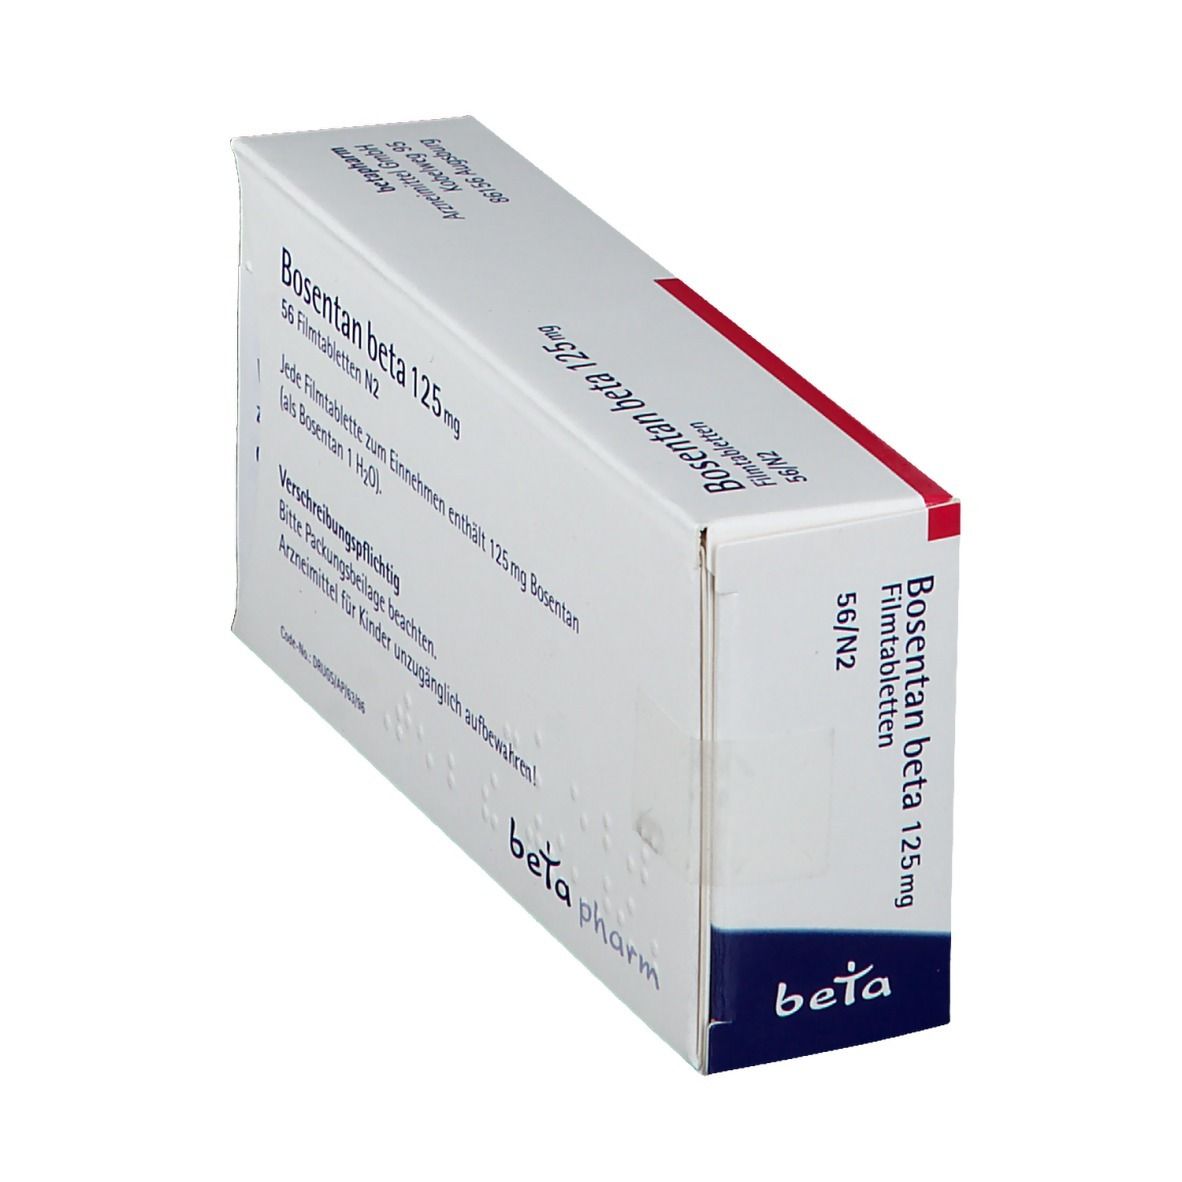 Bosentan beta 125 mg